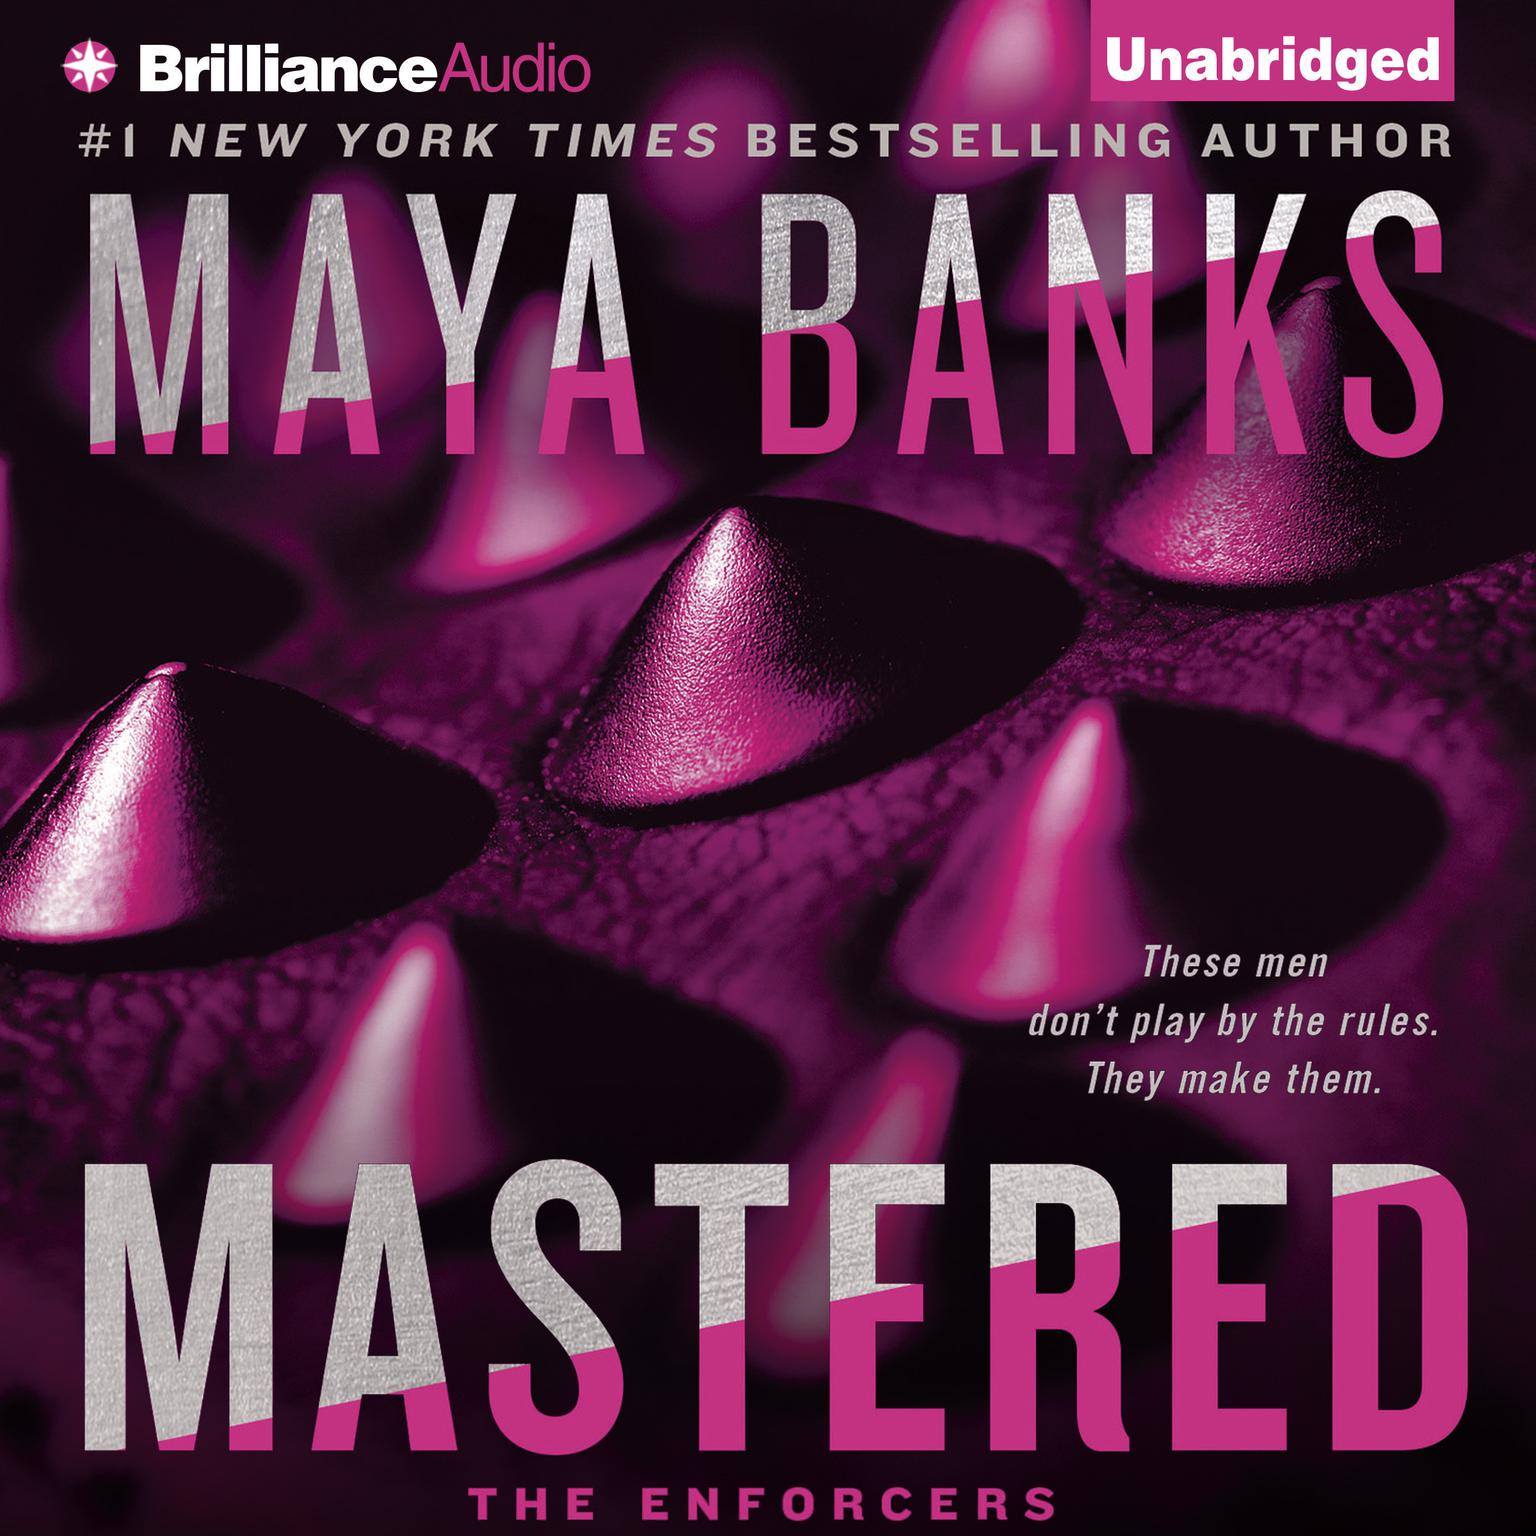 Mastered Audiobook, by Maya Banks